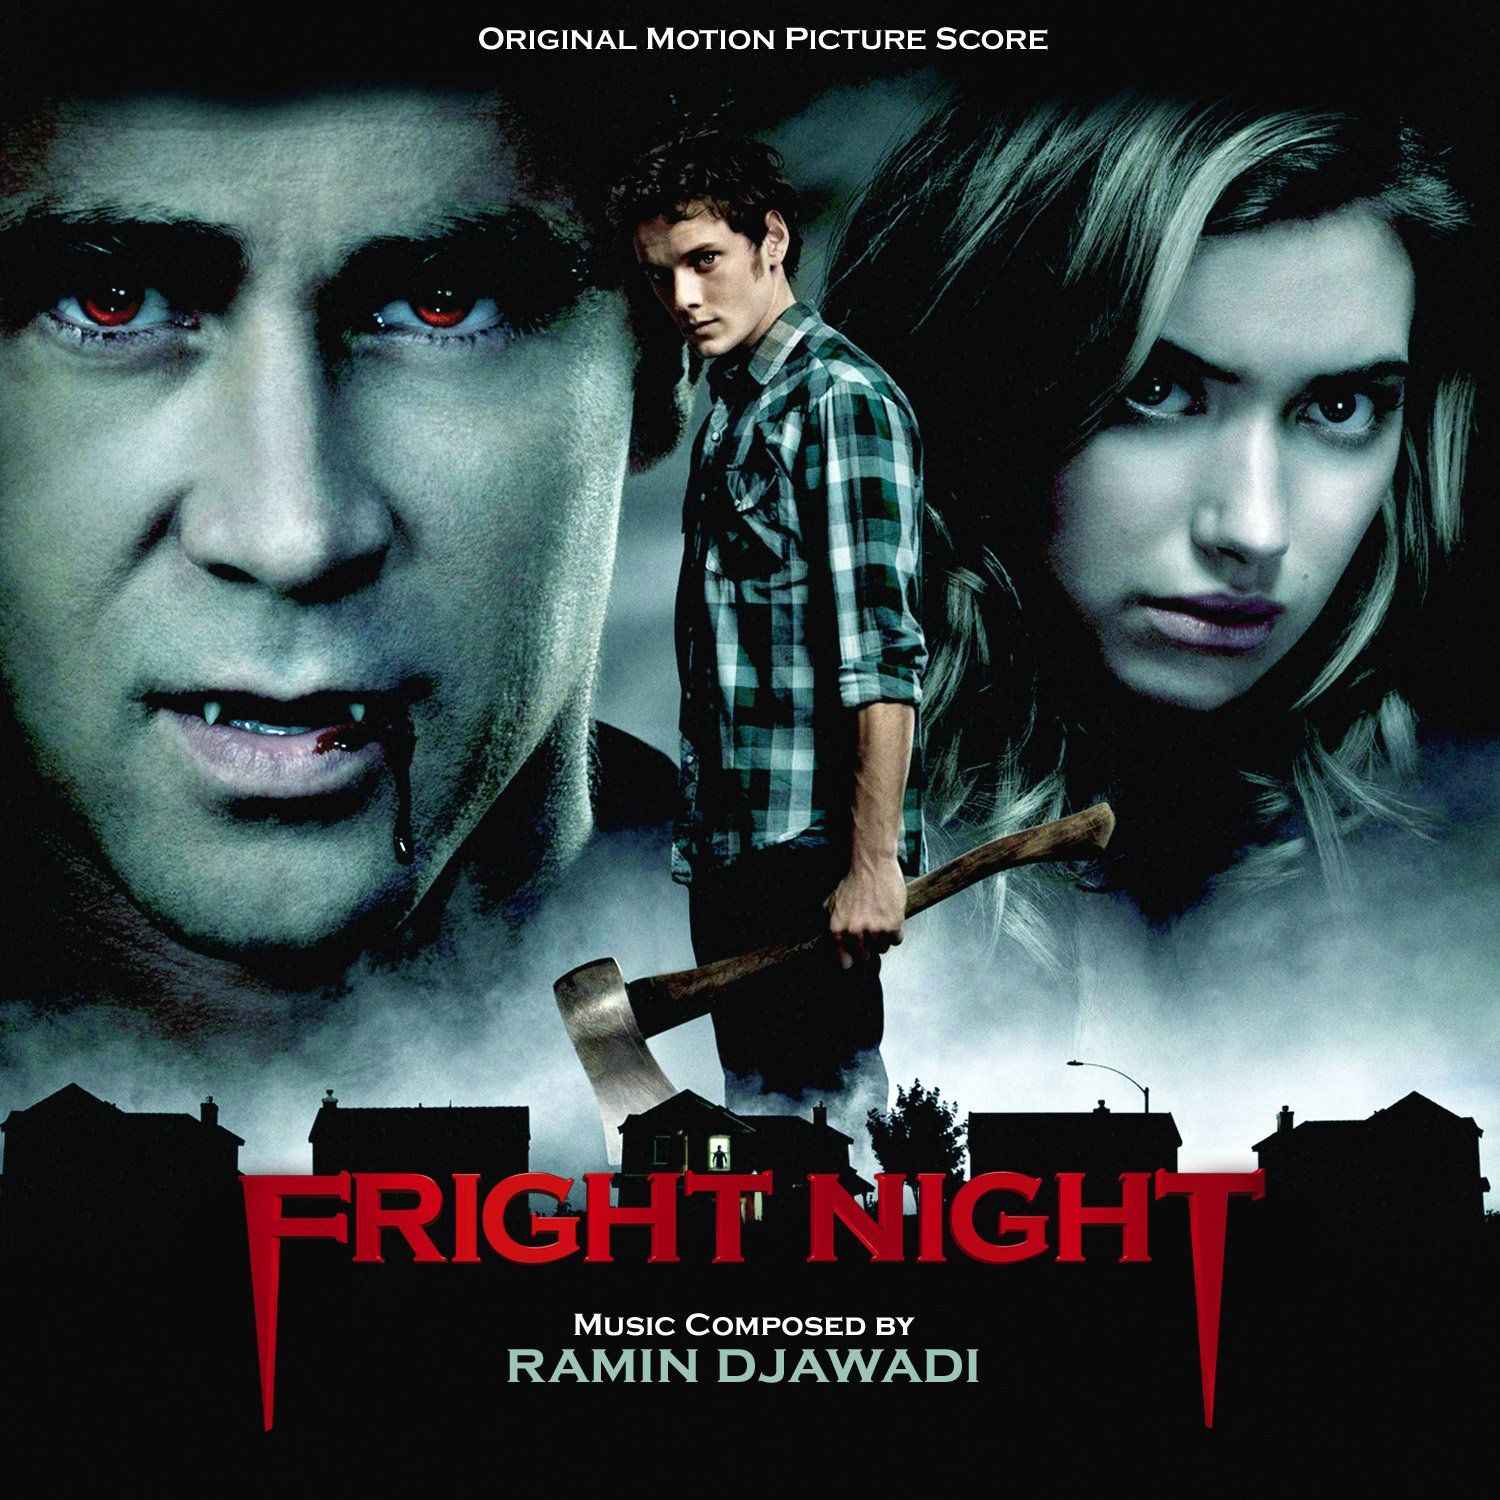 FRIGHT NIGHT comedy horror dark movie film poster wallpaperx1500